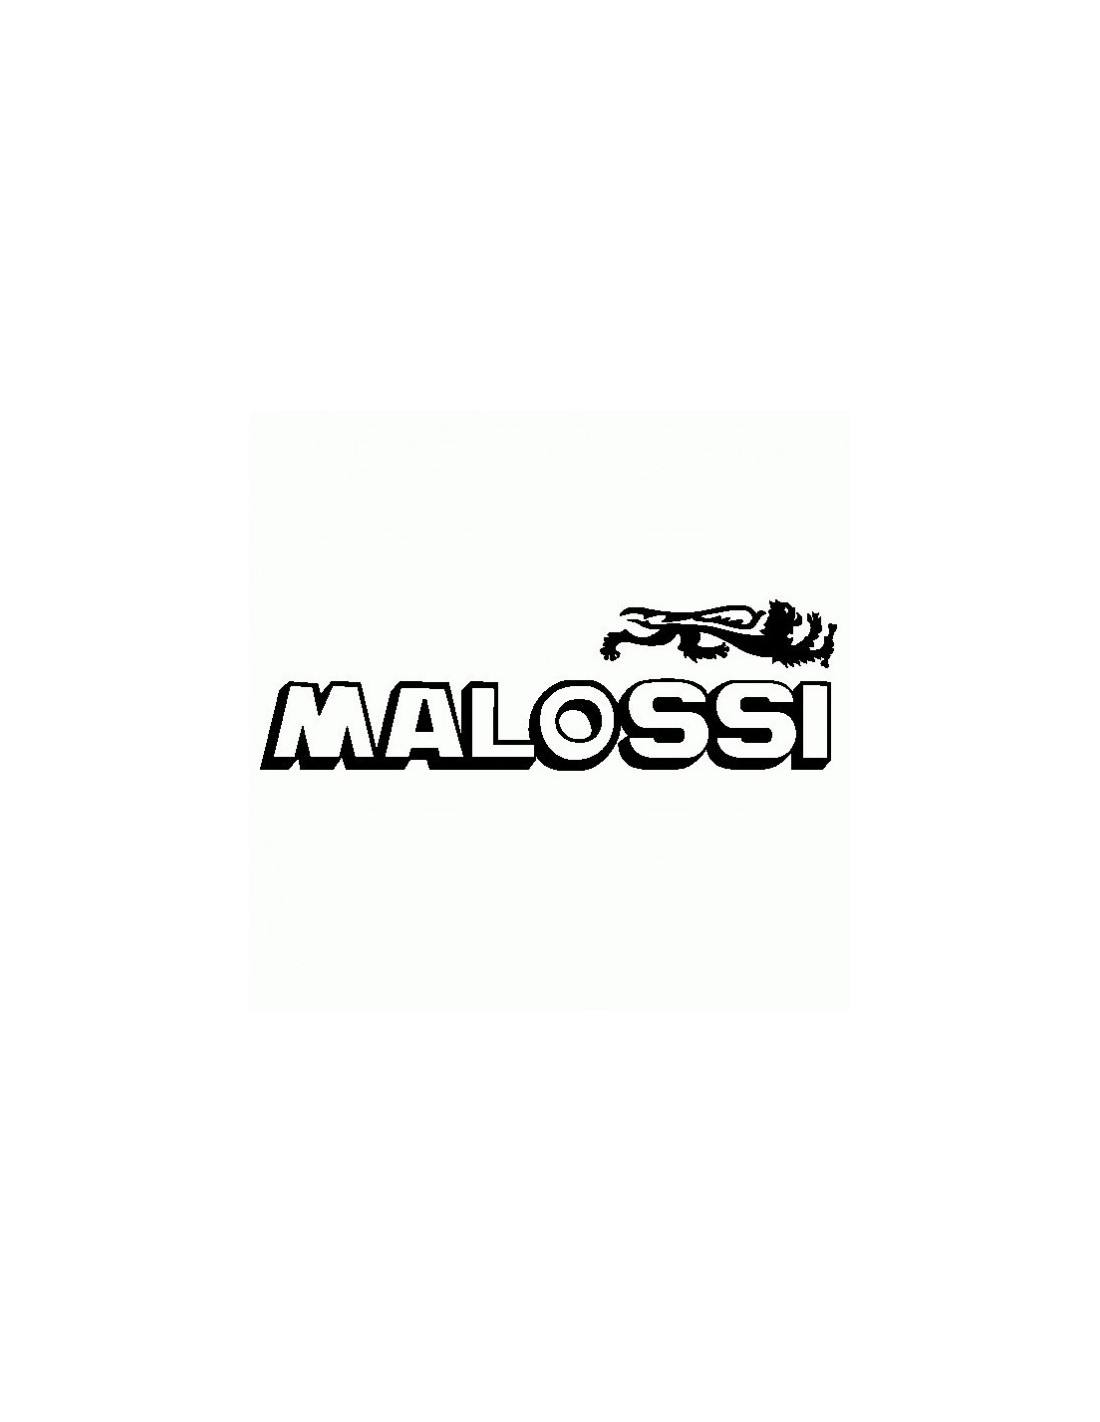 Malossi - Adesivo Prespaziato - AdesiviStore